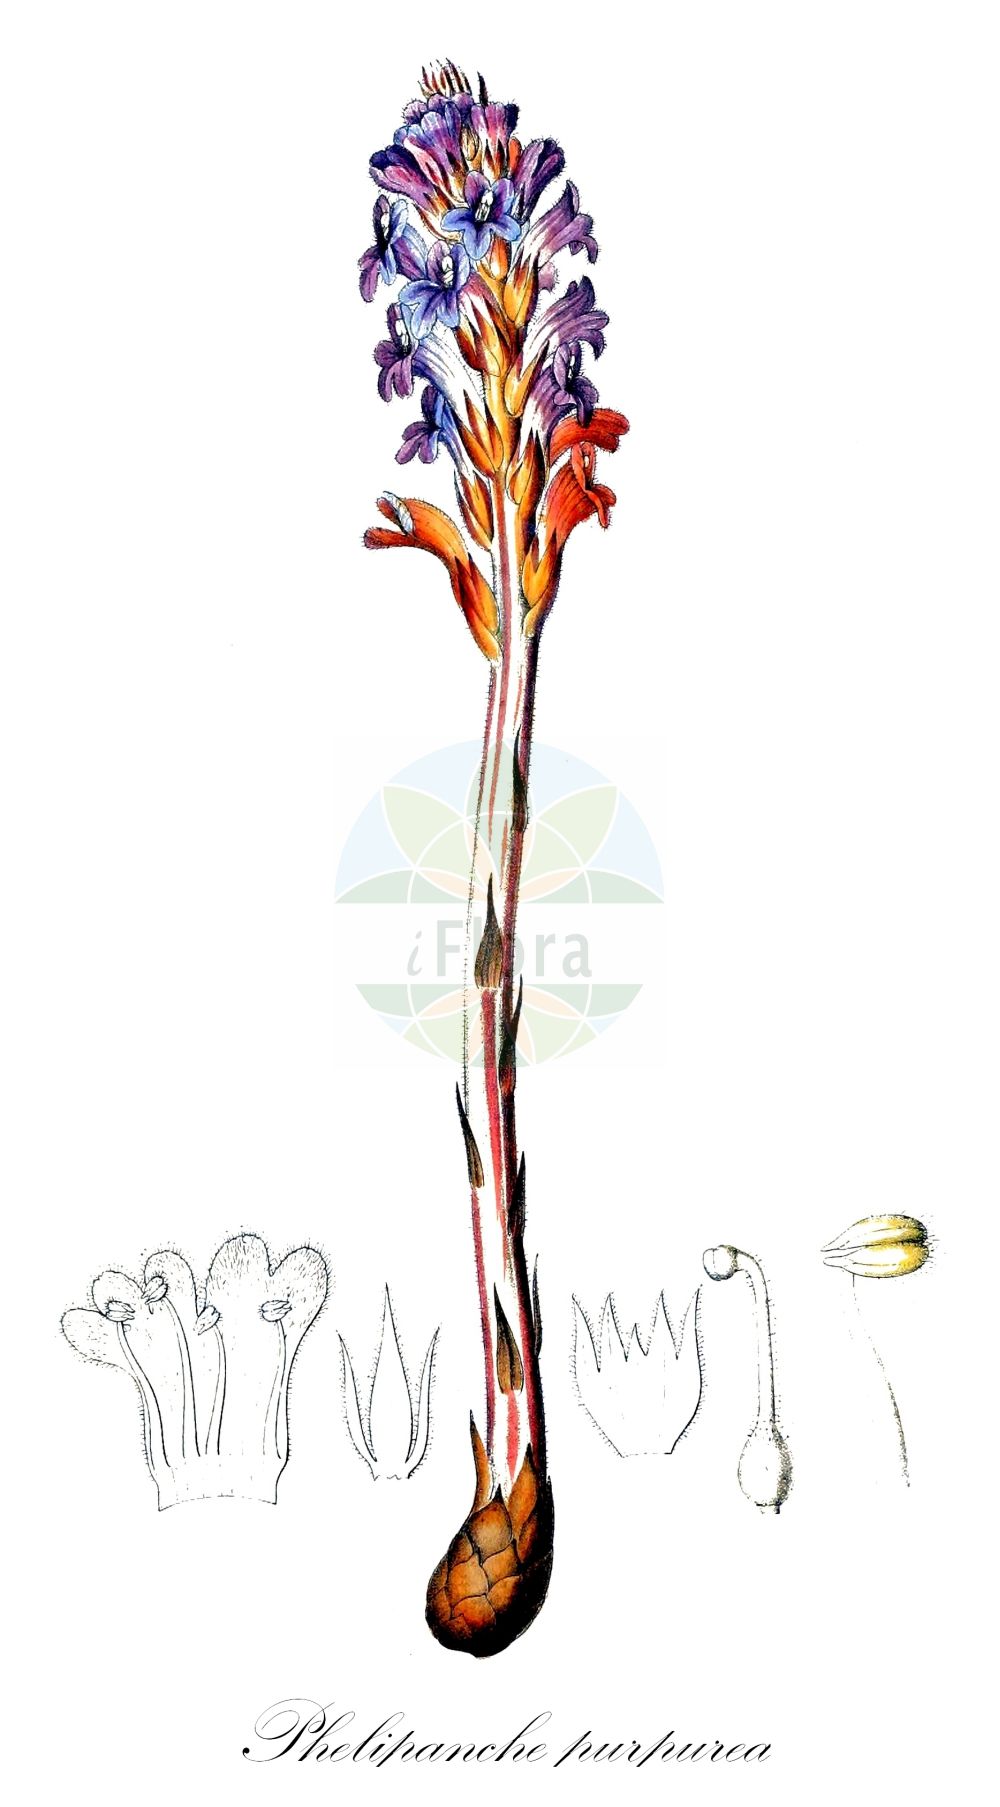 Historische Abbildung von Phelipanche purpurea (Böhmische Sommerwurz - Yarrow Broomrape). Das Bild zeigt Blatt, Bluete, Frucht und Same. ---- Historical Drawing of Phelipanche purpurea (Böhmische Sommerwurz - Yarrow Broomrape). The image is showing leaf, flower, fruit and seed.(Phelipanche purpurea,Böhmische Sommerwurz,Yarrow Broomrape,Kopsia caerulea,Kopsia purpurea,Orobanche bohemica,Orobanche caerulea,Orobanche iberica,Orobanche purpurea,Phelipanche bohemica,Phelipanche iberica,Phelipanche purpurea,Phelypaea caerulea,Phelypaea pareysii,Phelypaea purpurea,Boehmische Sommerwurz,Purpur-Sommerwurz,Yarrow Broomrape,Purple Broomrape,Phelipanche,Orobanchaceae,Sommerwurzgewächse,Broomrape family,Blatt,Bluete,Frucht,Same,leaf,flower,fruit,seed,Dietrich (1833-1844))